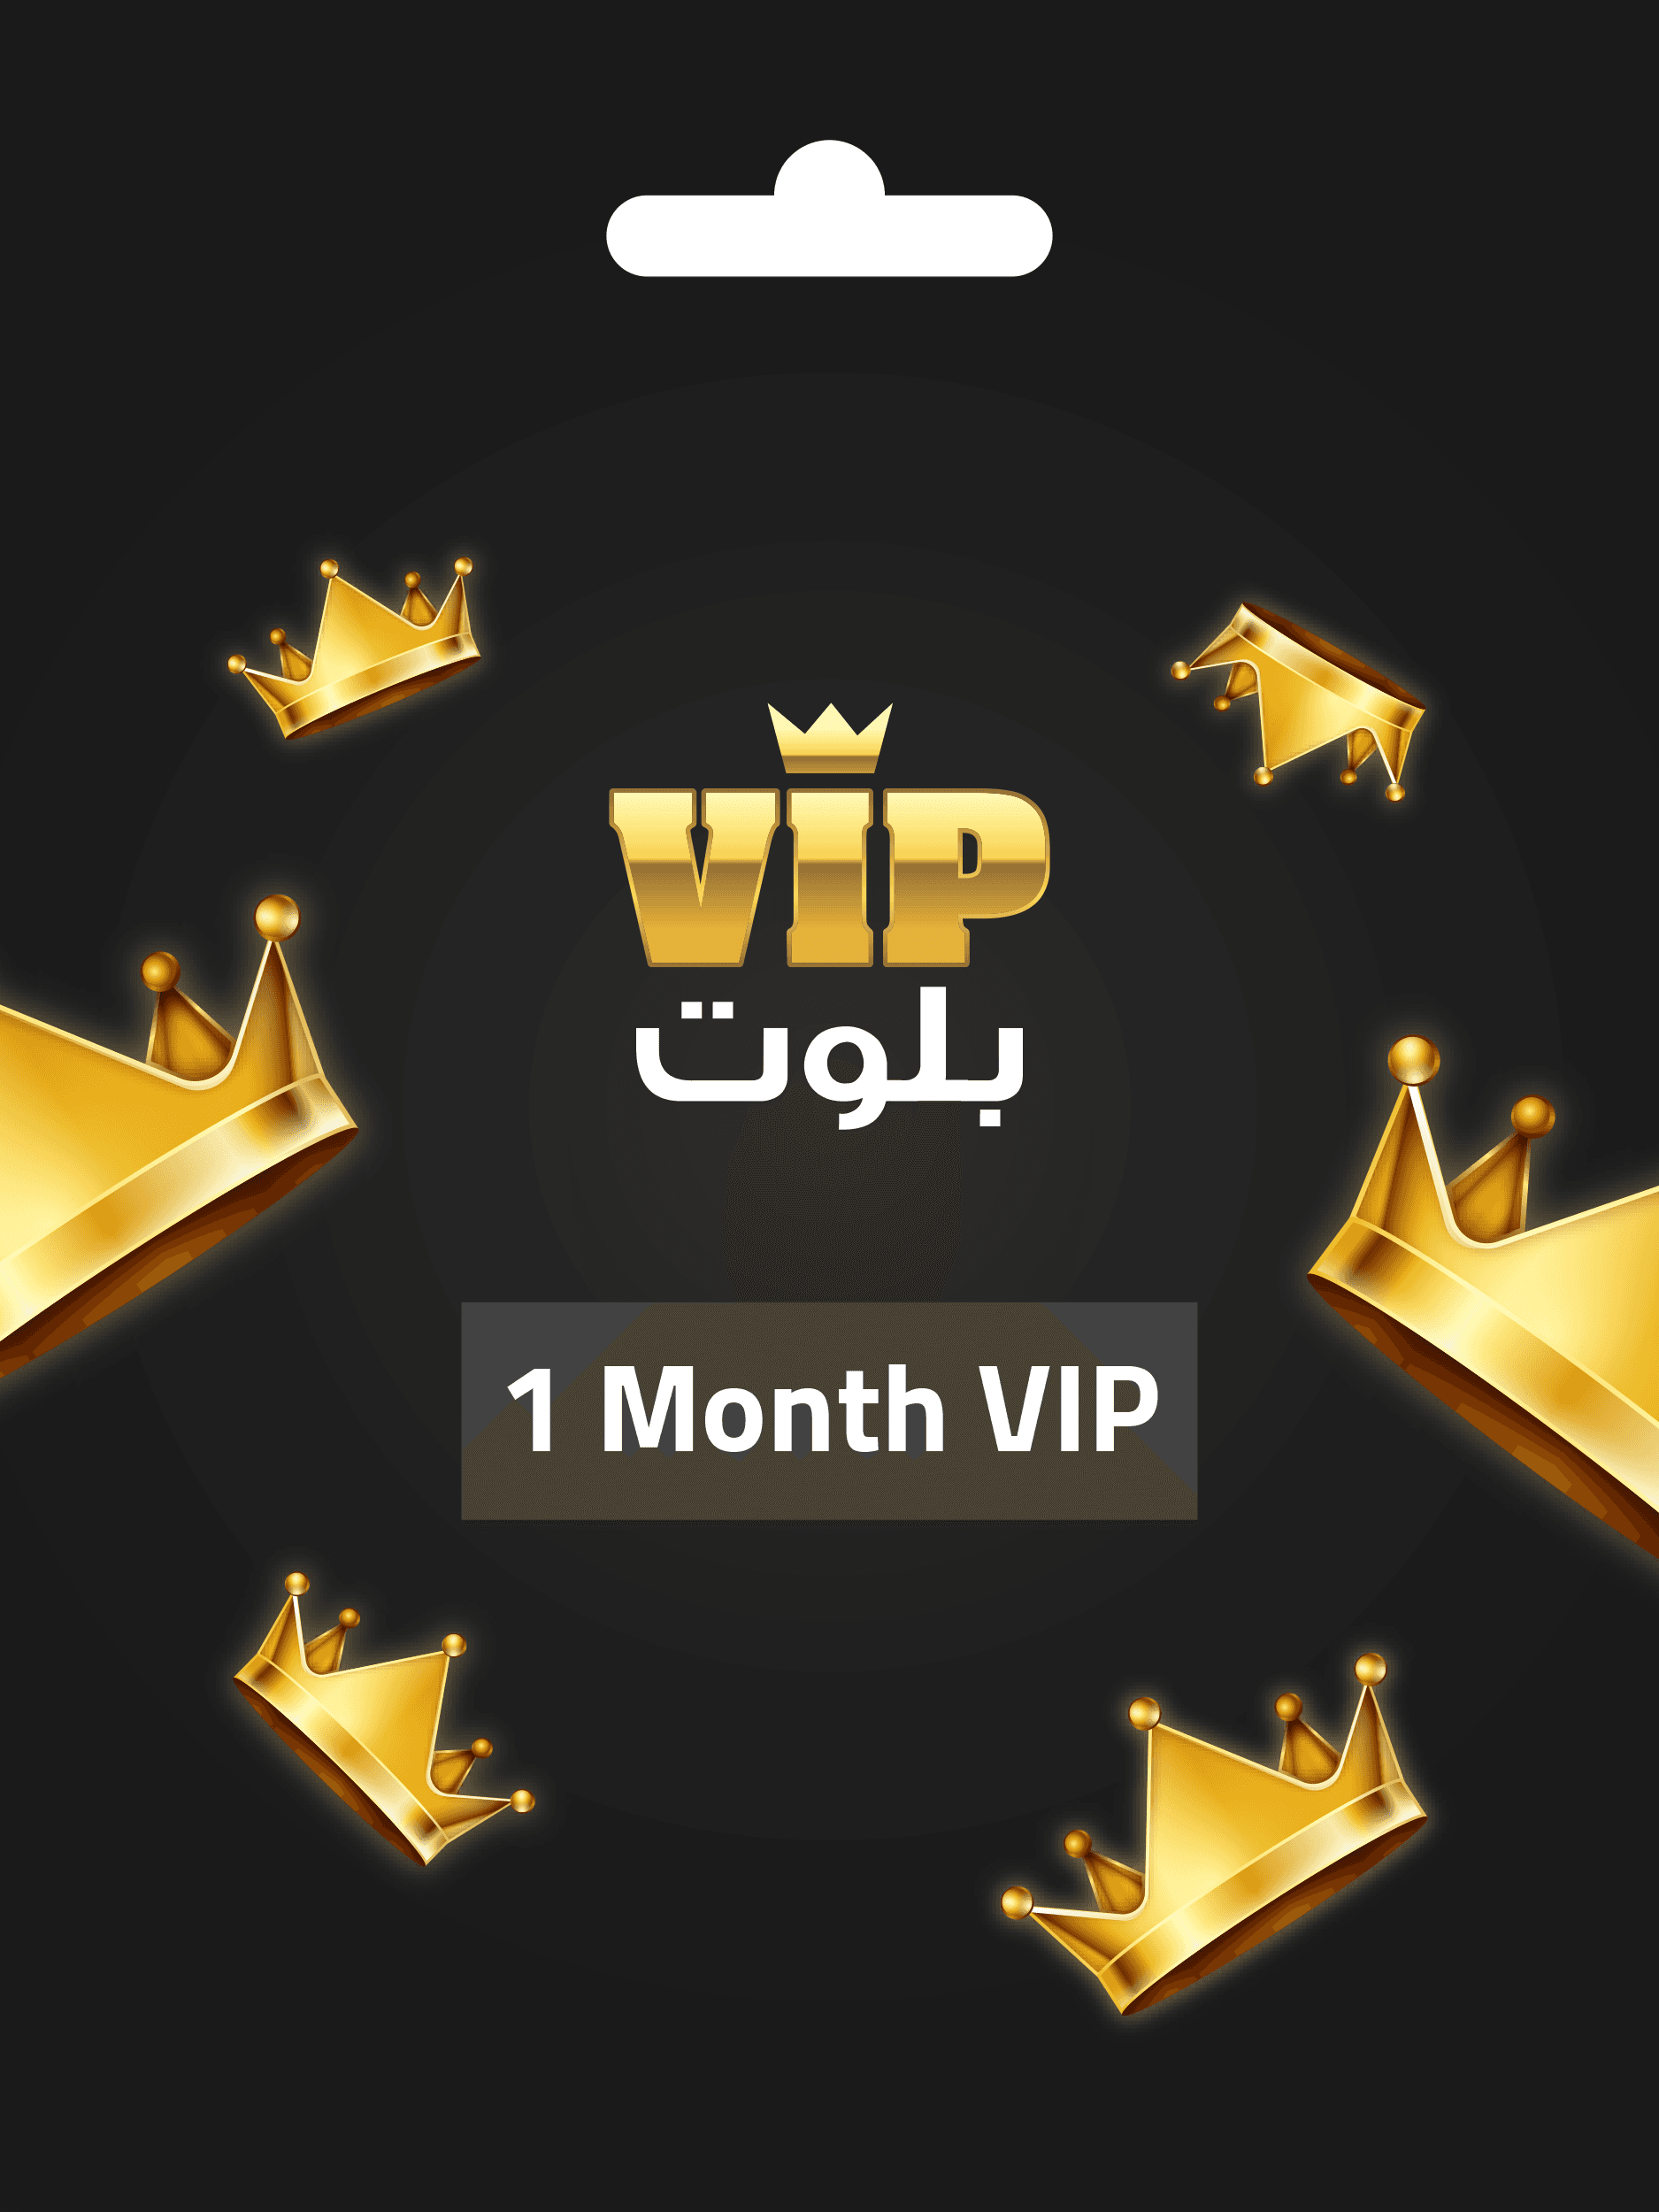 عضوية vip بلوت لمدة شهر واحد VIP Baloot